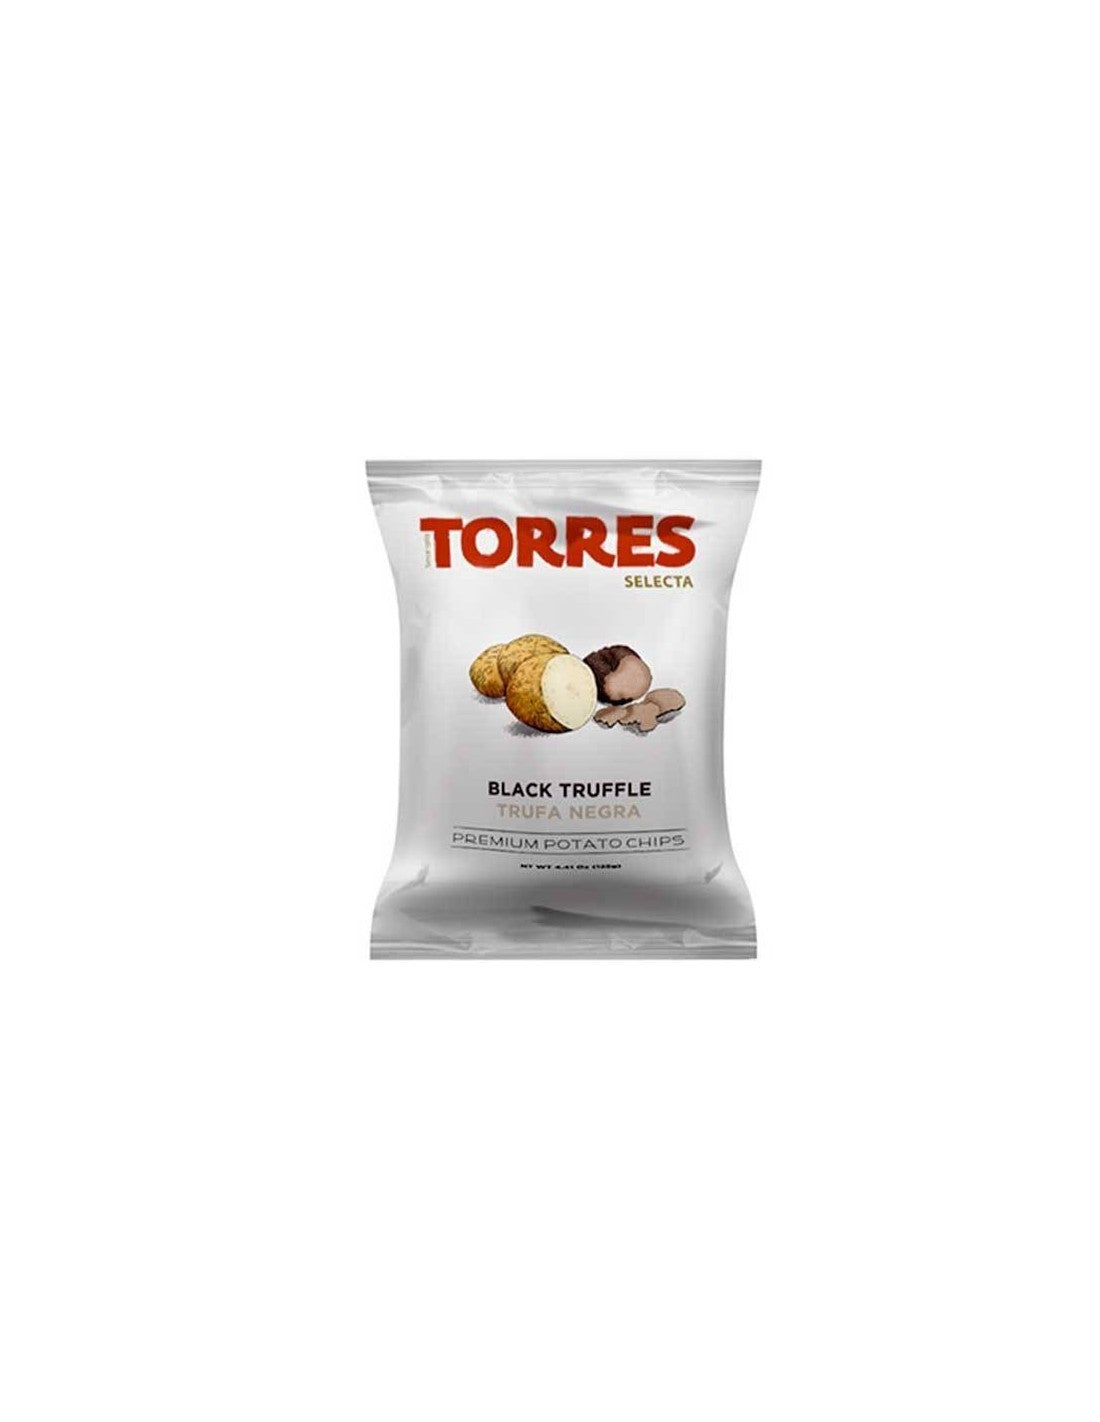 Bolsa grande de patatas fritas con trufa negra, de Patatas Fritas Torres (1  x 4.41 onzas)